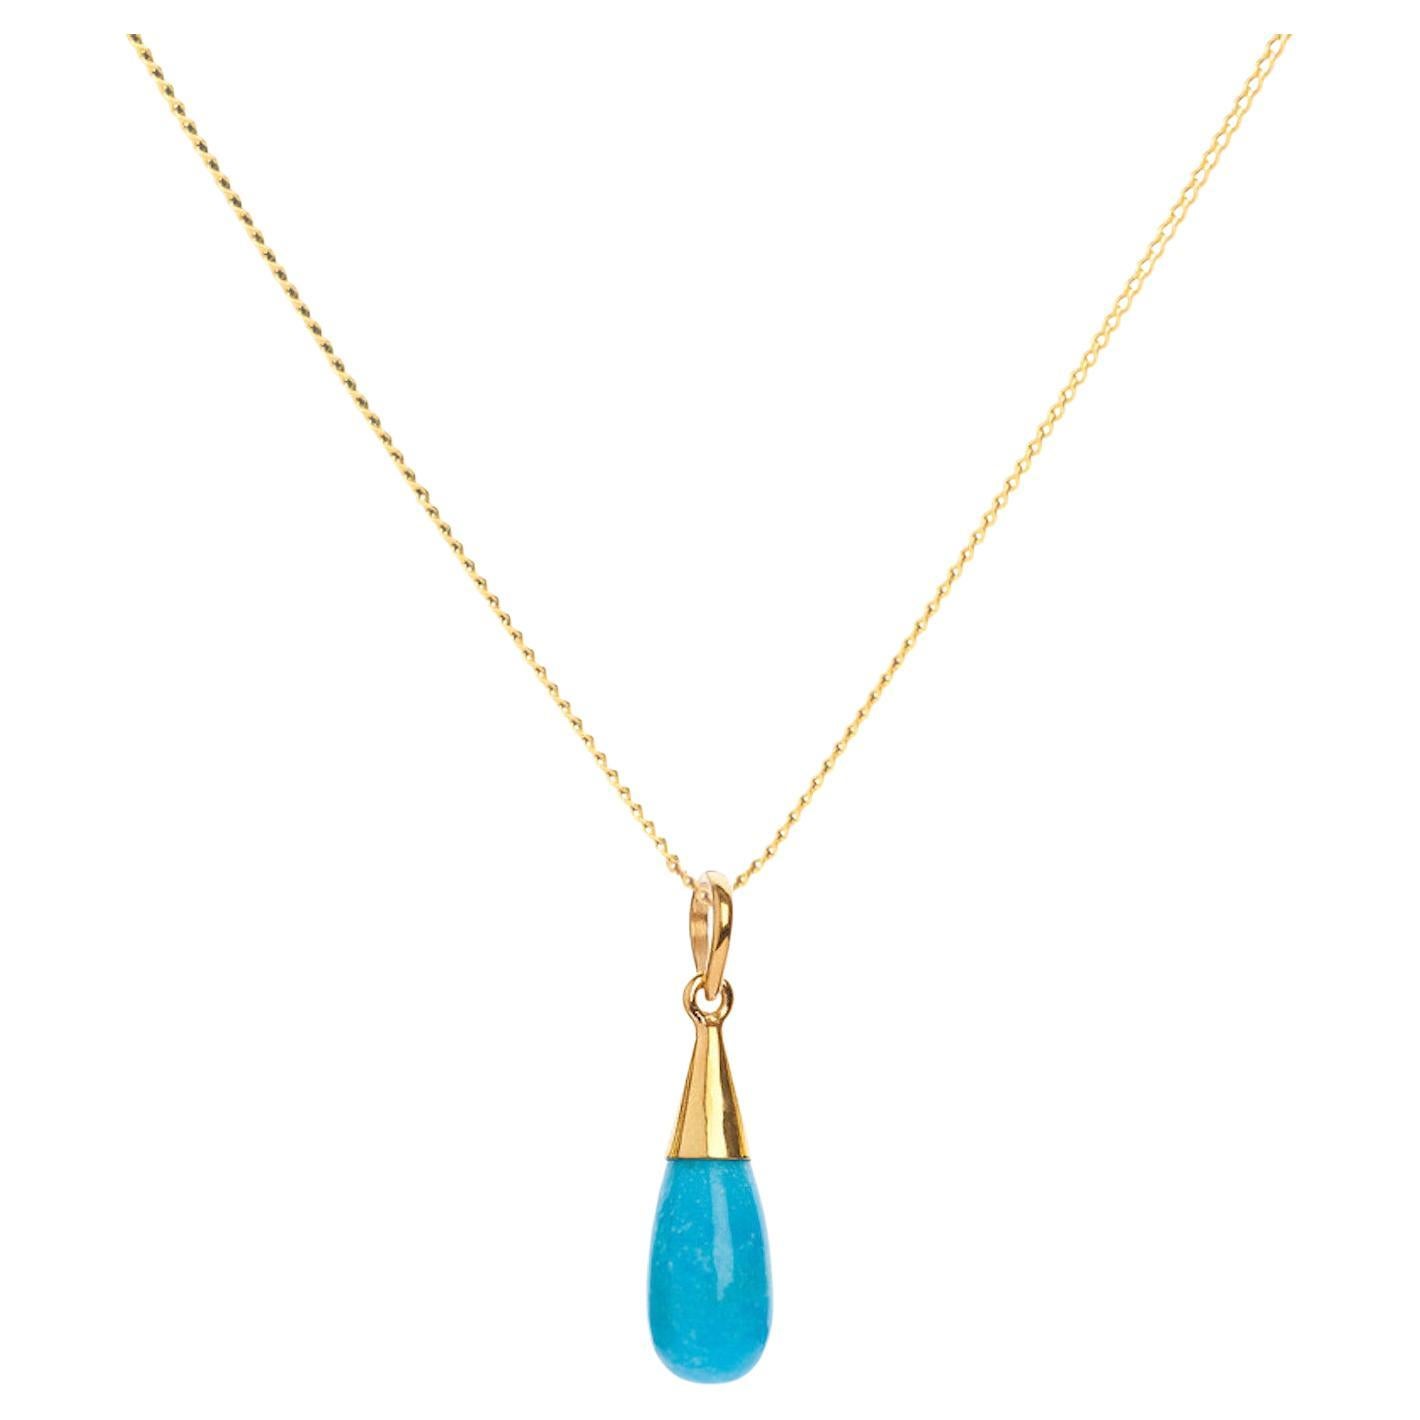 Elizabeth Raine, collier pendentif chakra en or 18 carats et turquoise